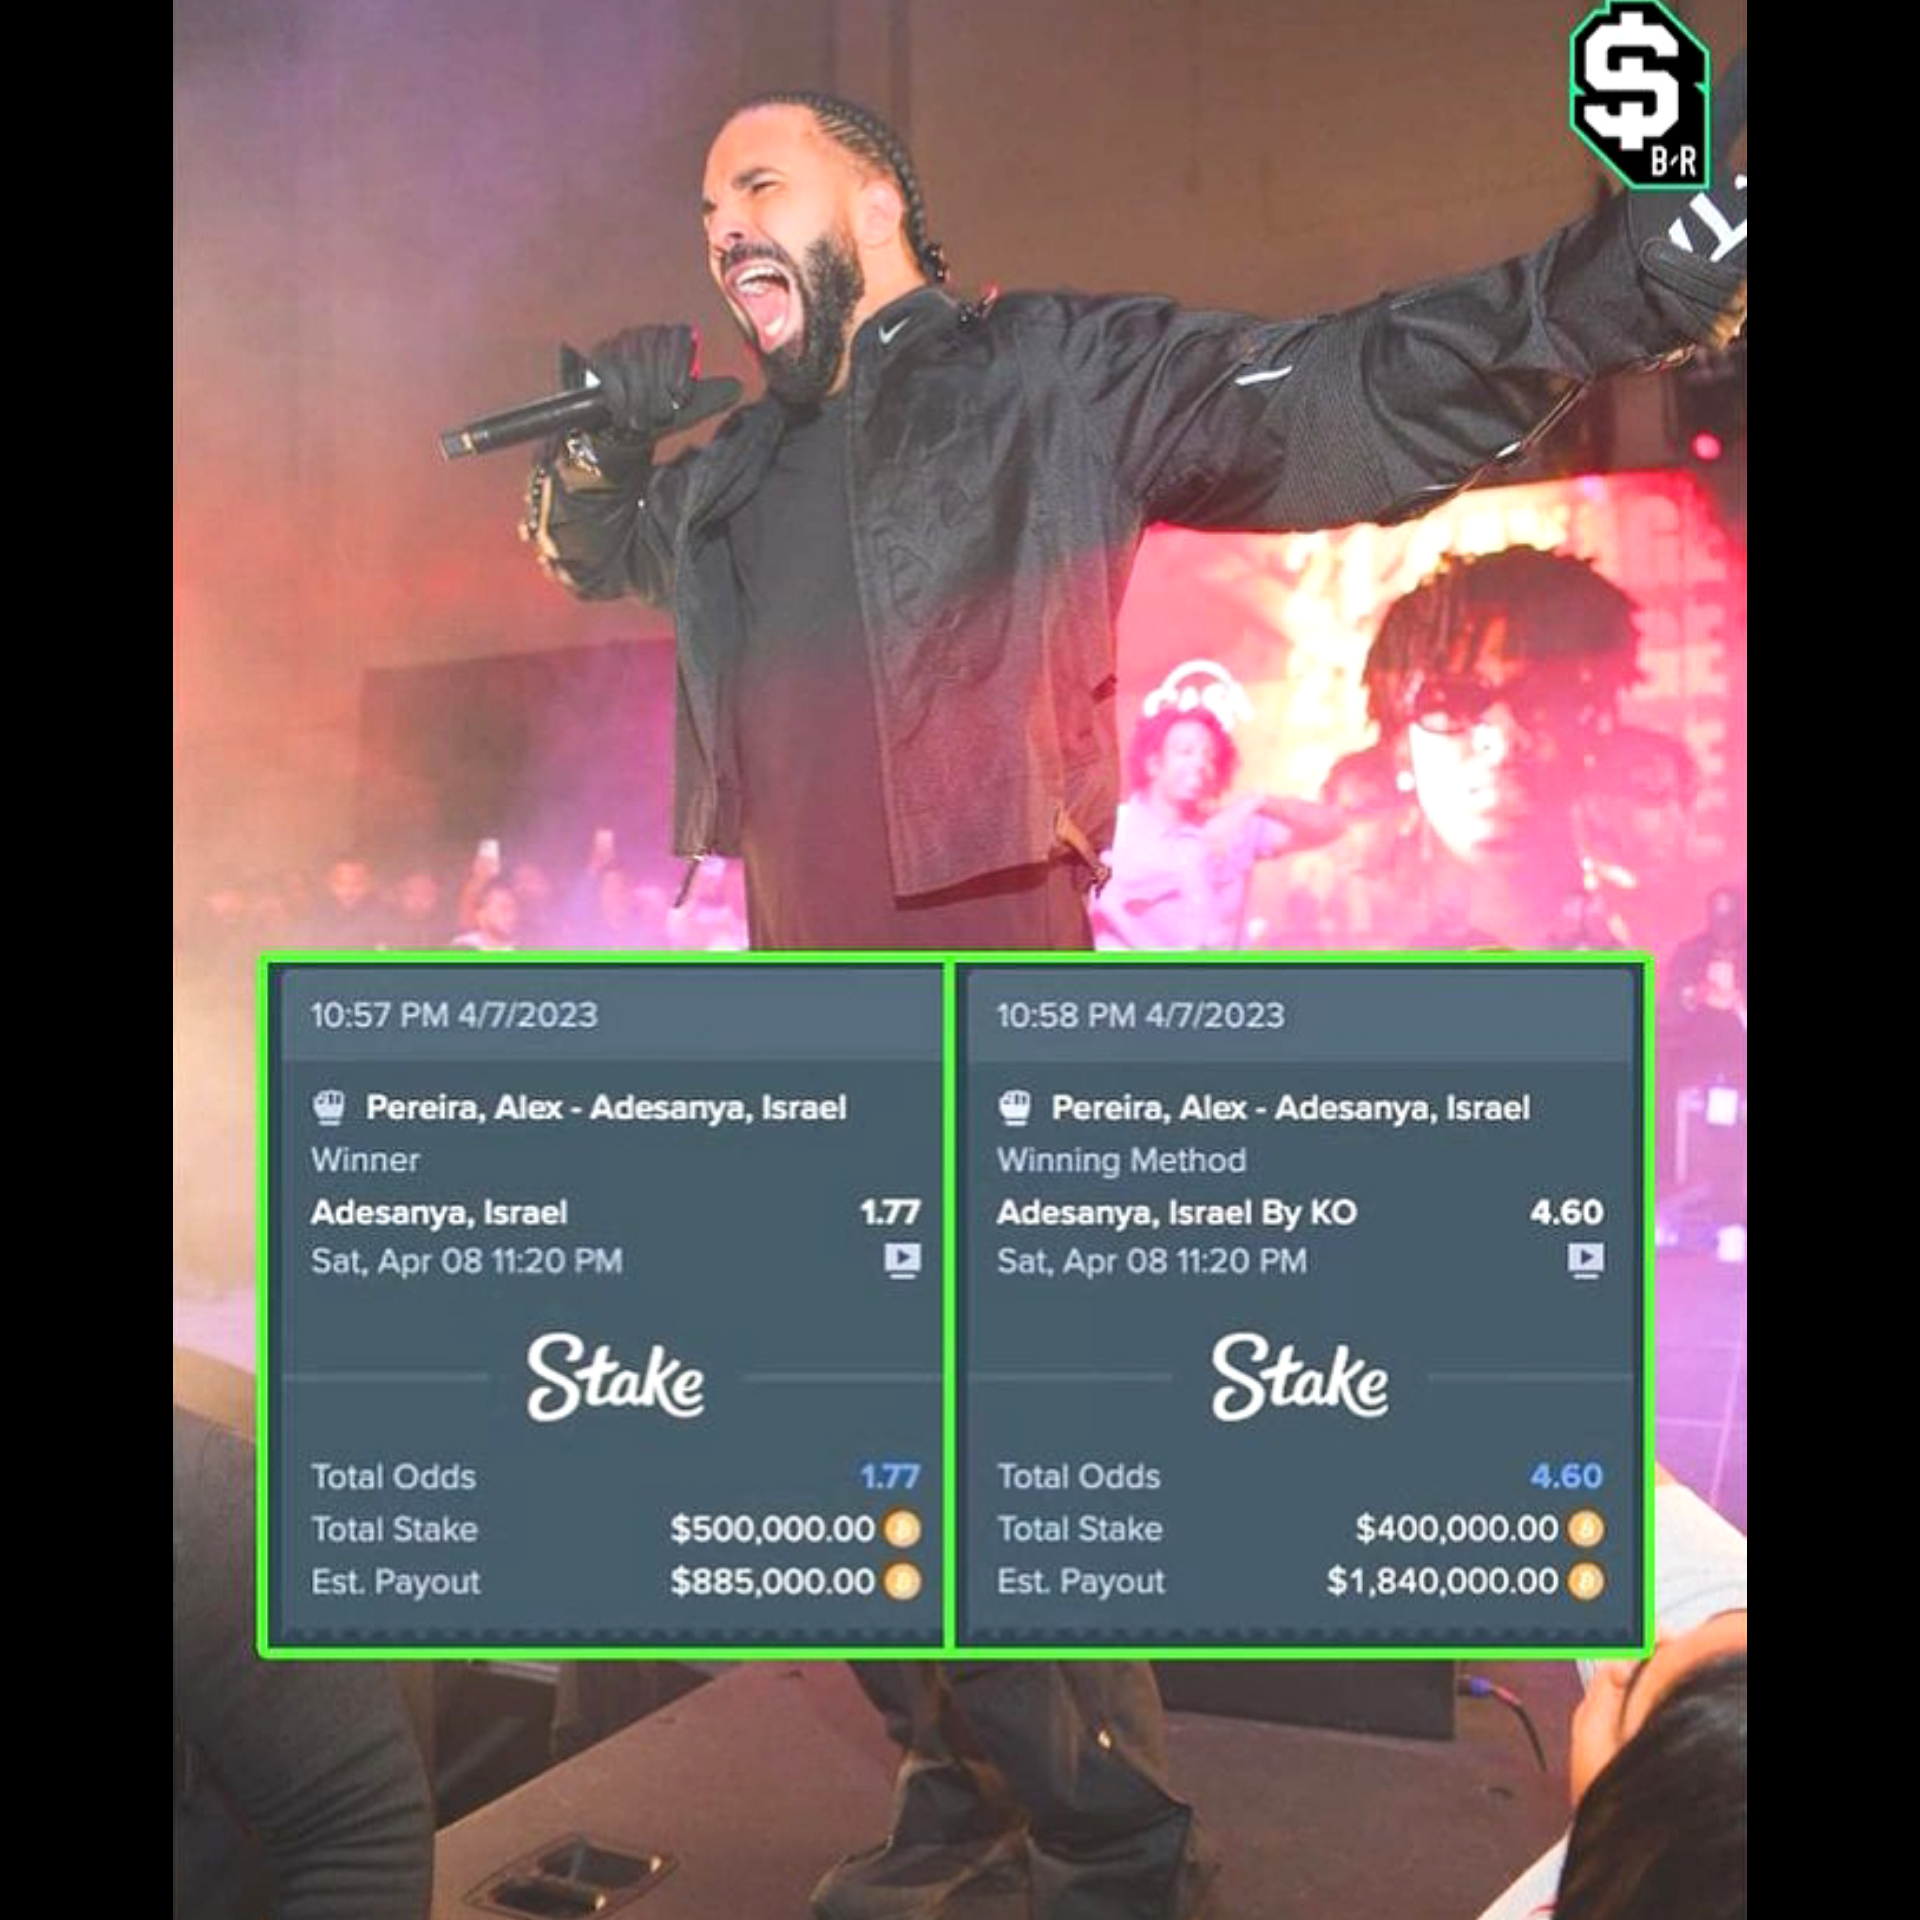 Drake won $2.7 million dollars